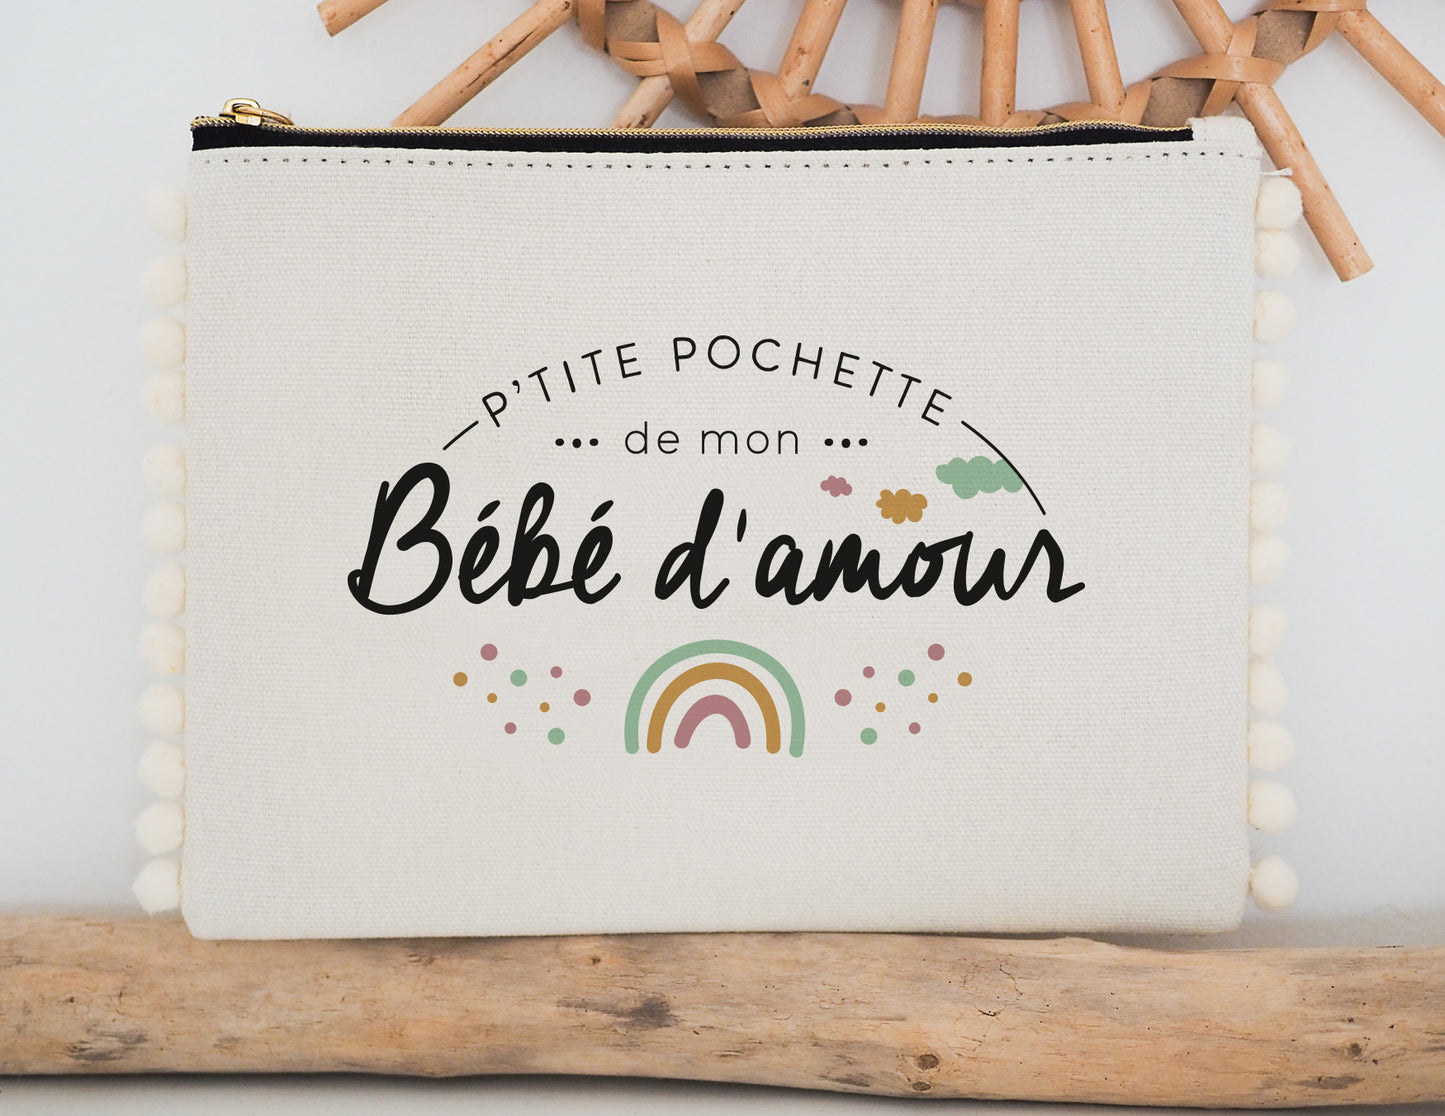 Pochette - pompon - P'tite pochette de mon bébé d'amour